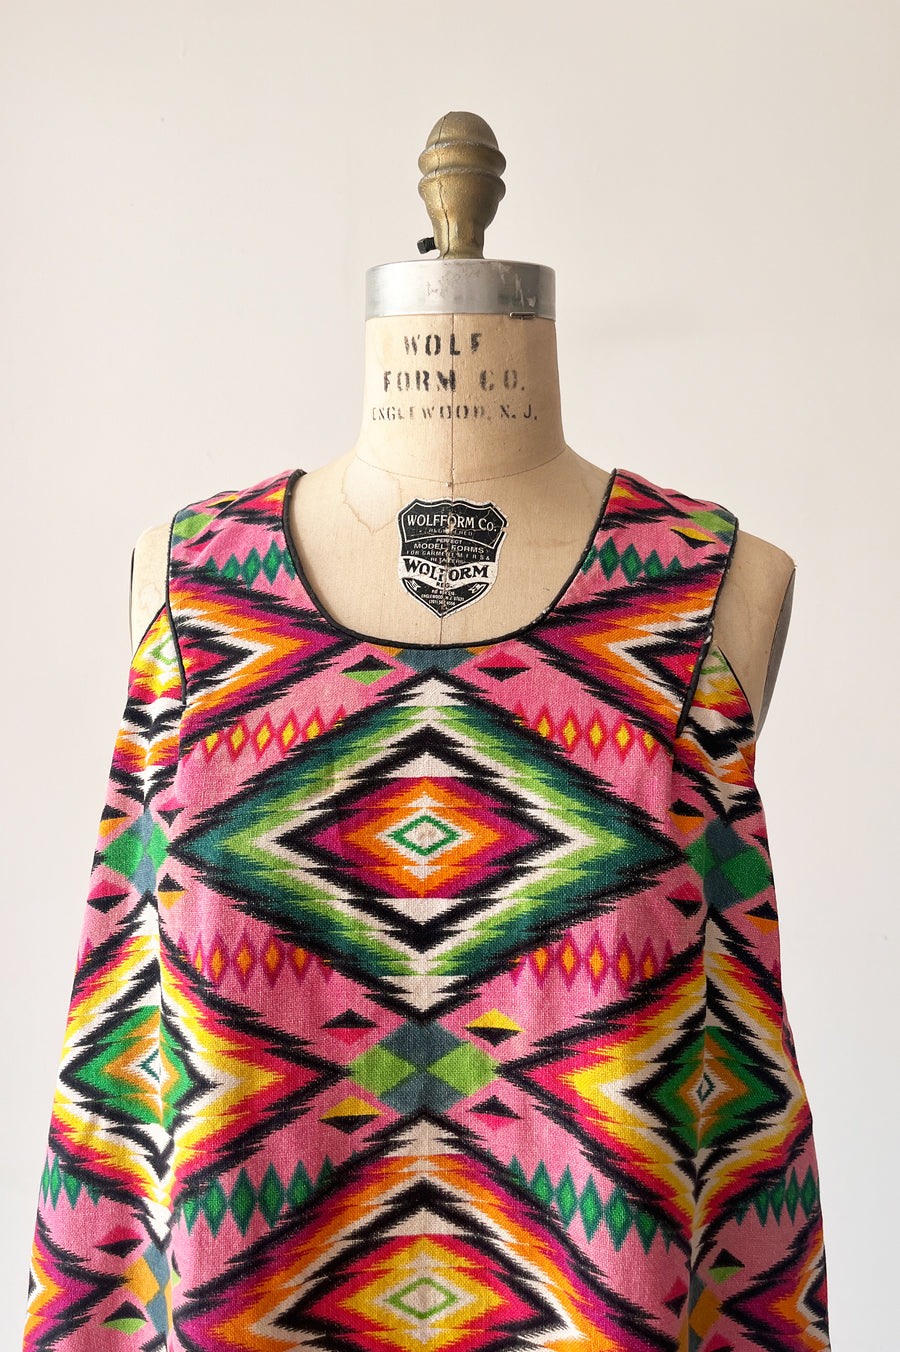 Vintage Patterned Colorful Dress